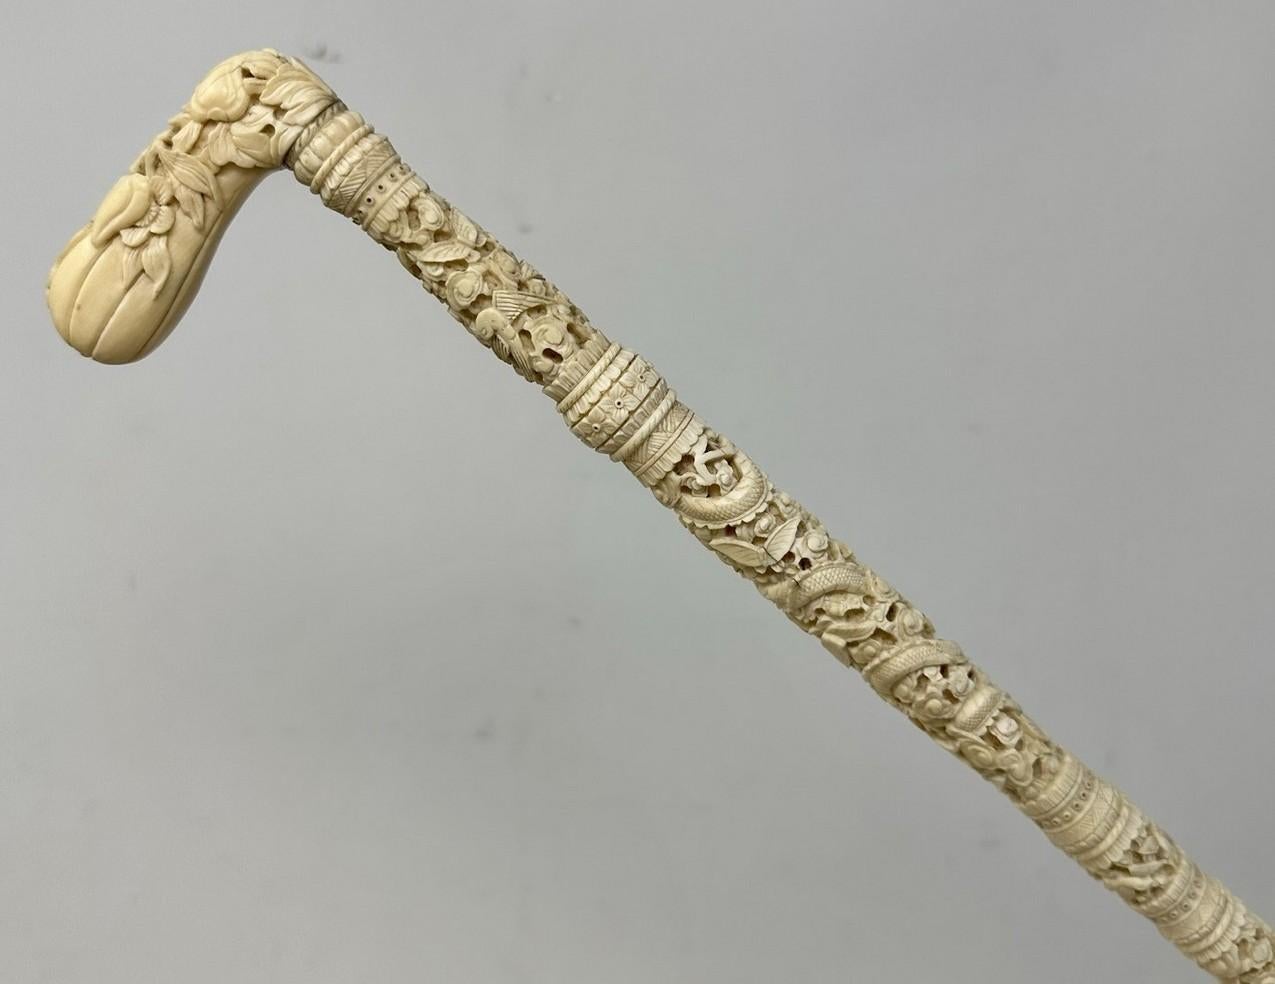 Exceptionnel exemple de canne en ivoire bovin d'exportation chinoise, sculptée à la main, de petites proportions, dernier quart du XIXe siècle. 

Cette poignée en forme de 